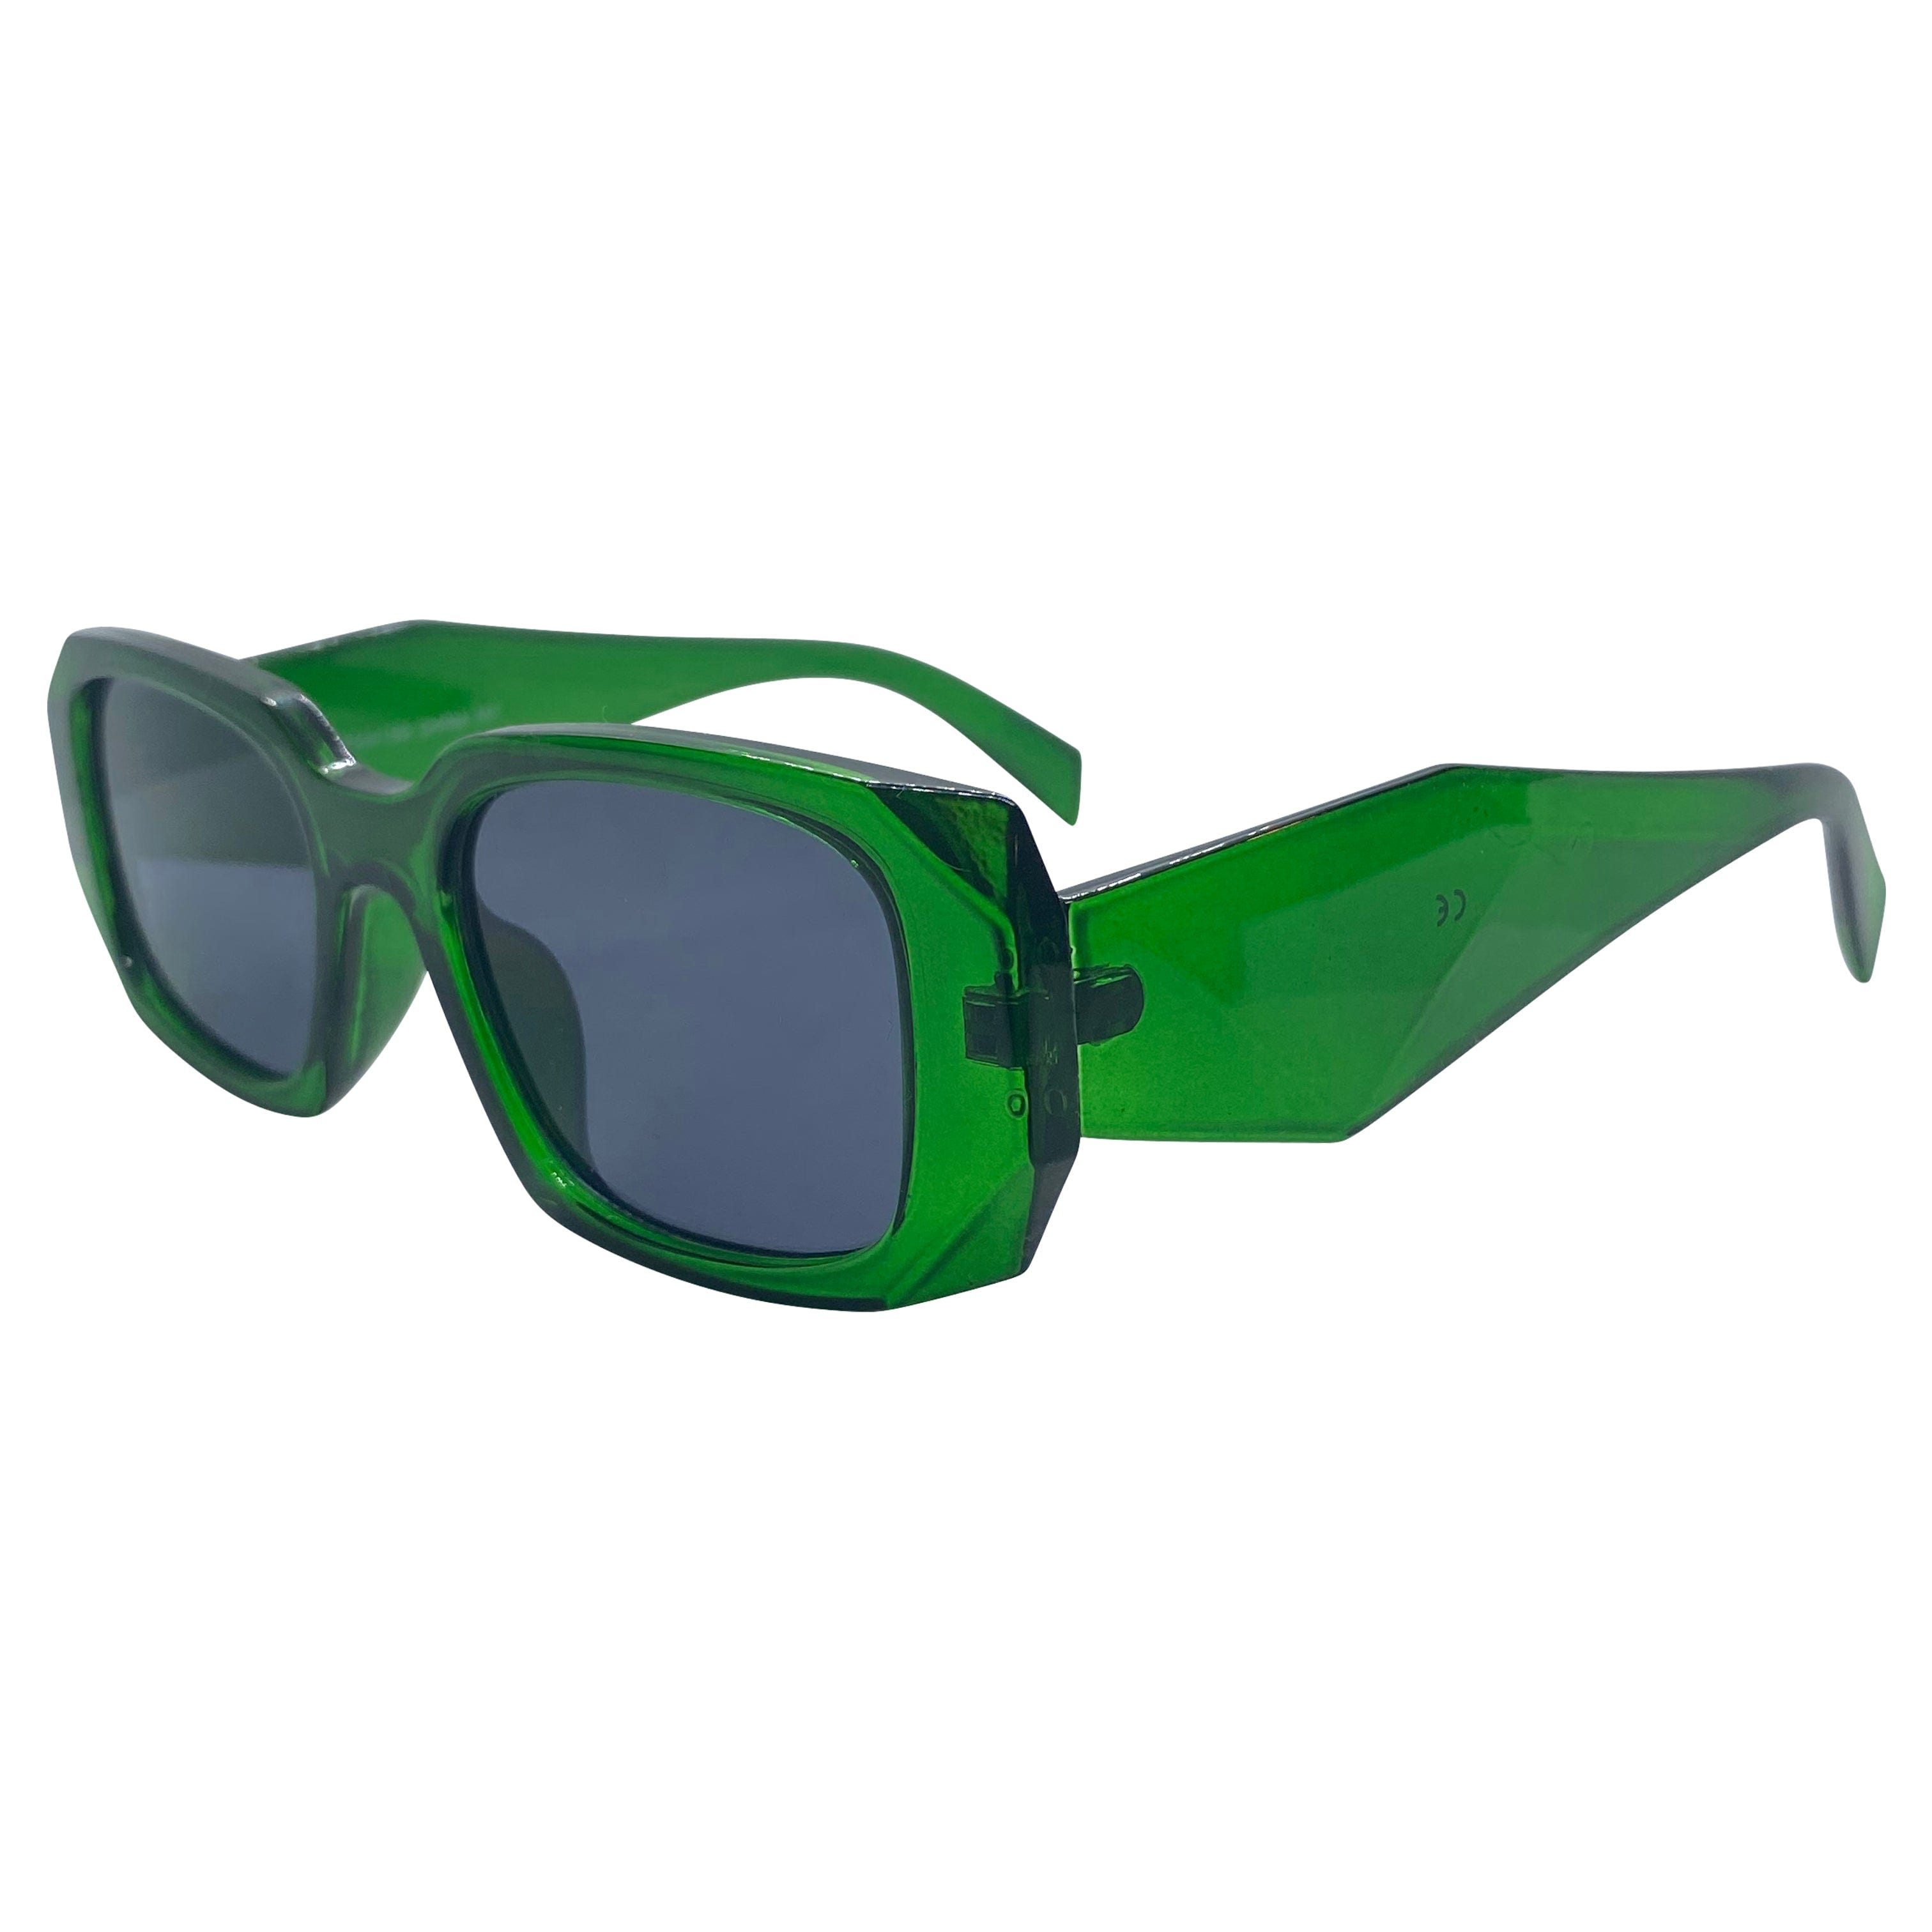 KNIGHT Green/SD Square Sunglasses